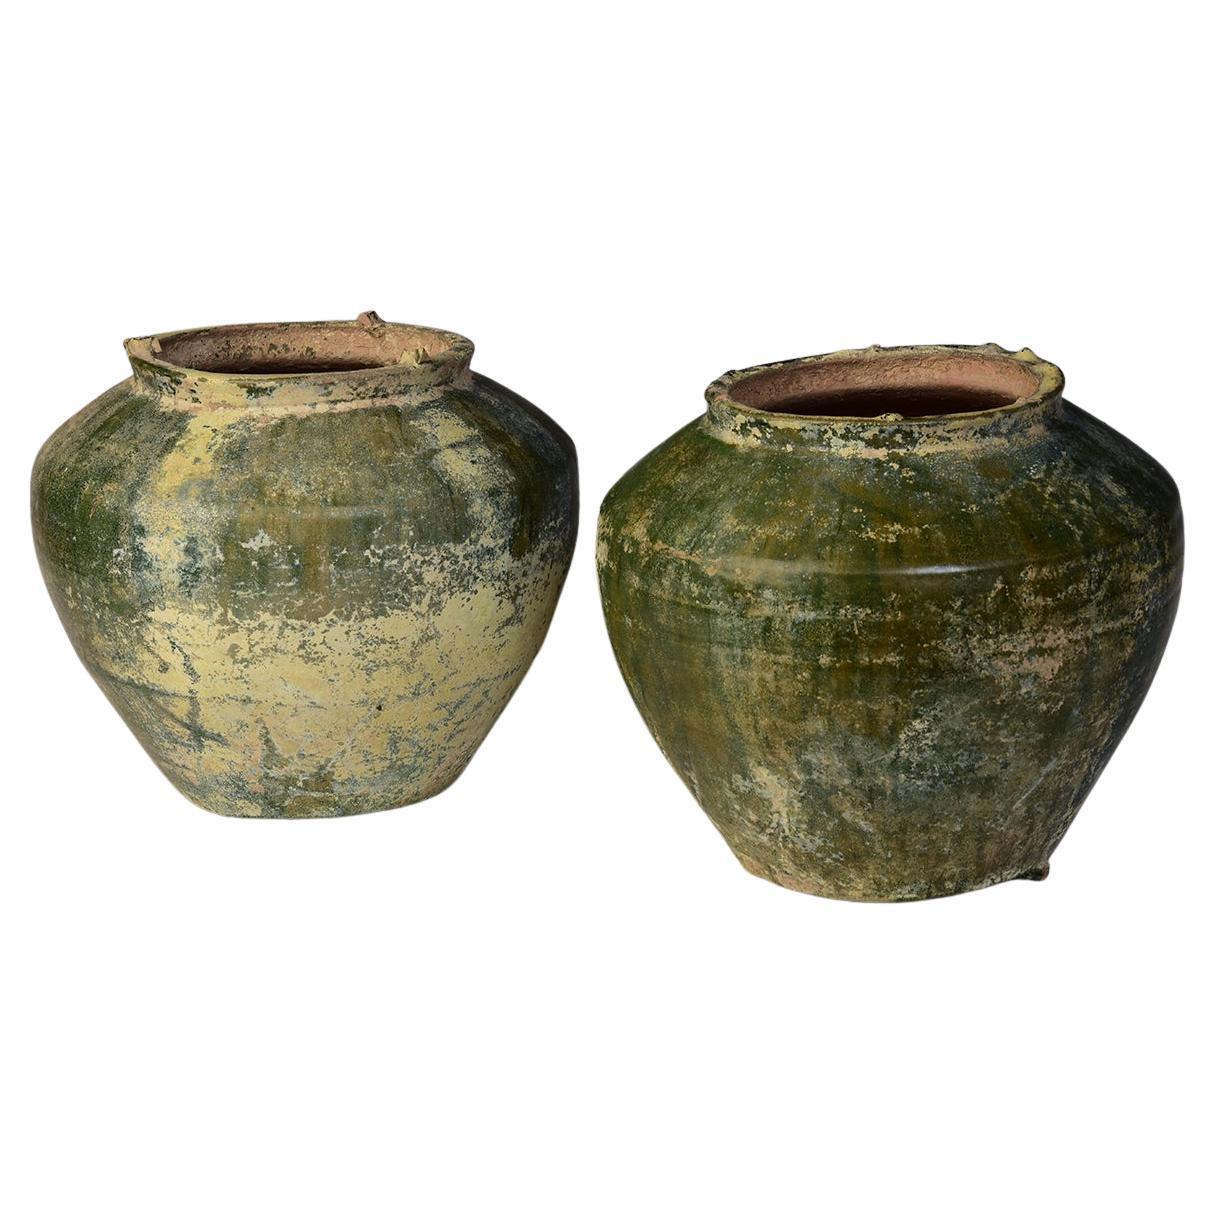 Han Dynasty, ein Paar antike chinesische grün glasierte JARs aus Keramik